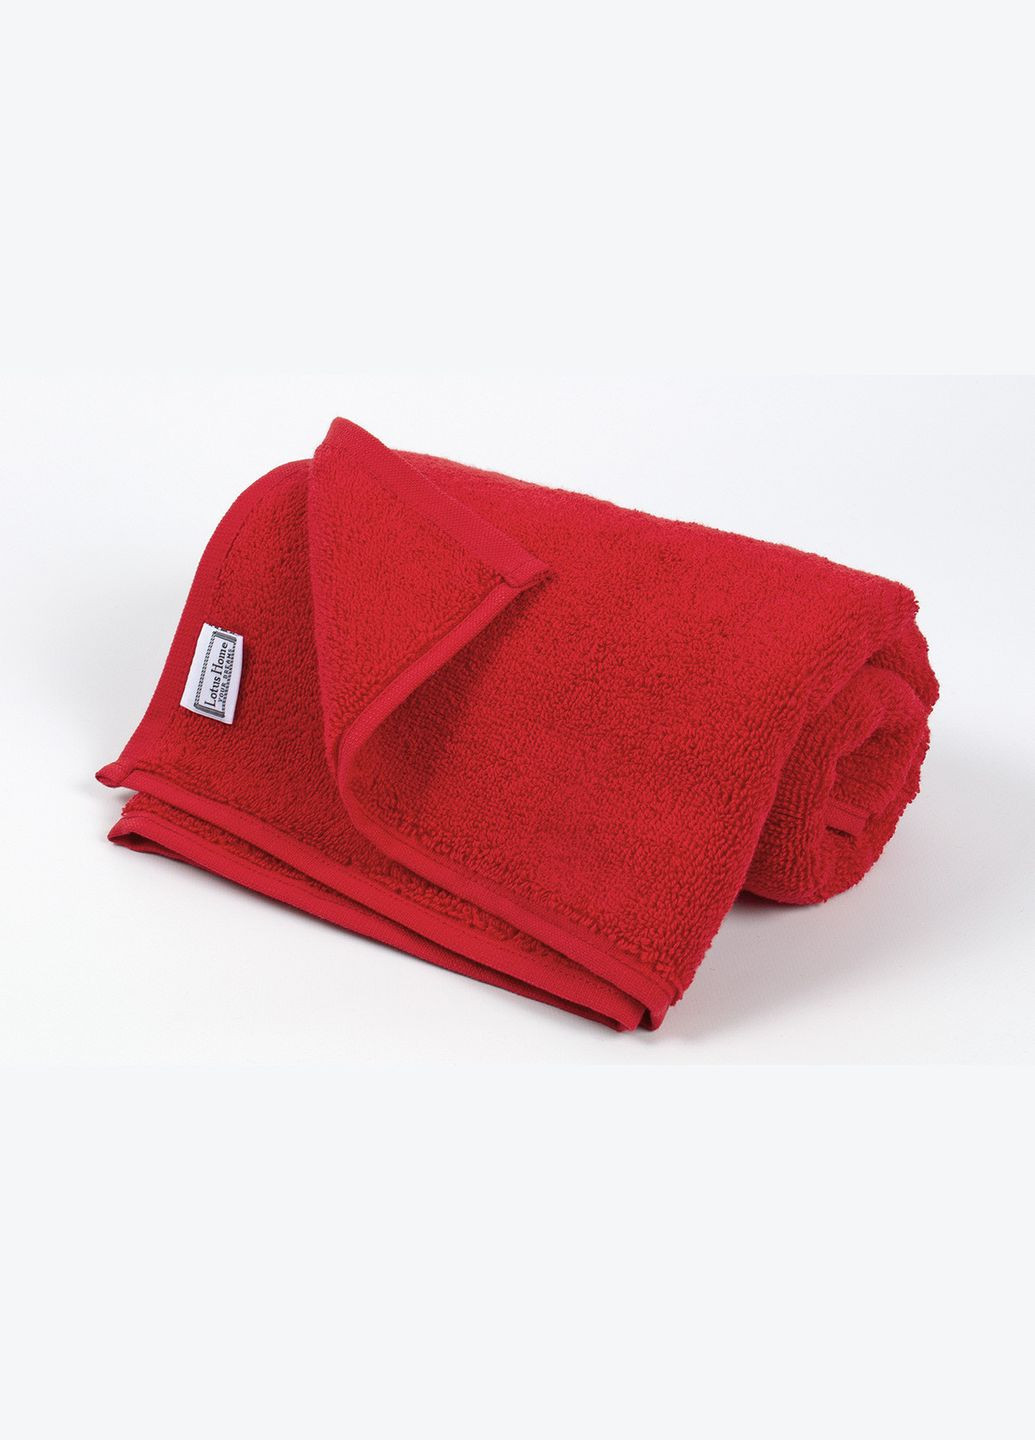 Lotus полотенце отель - v1 70*140 красный производство -